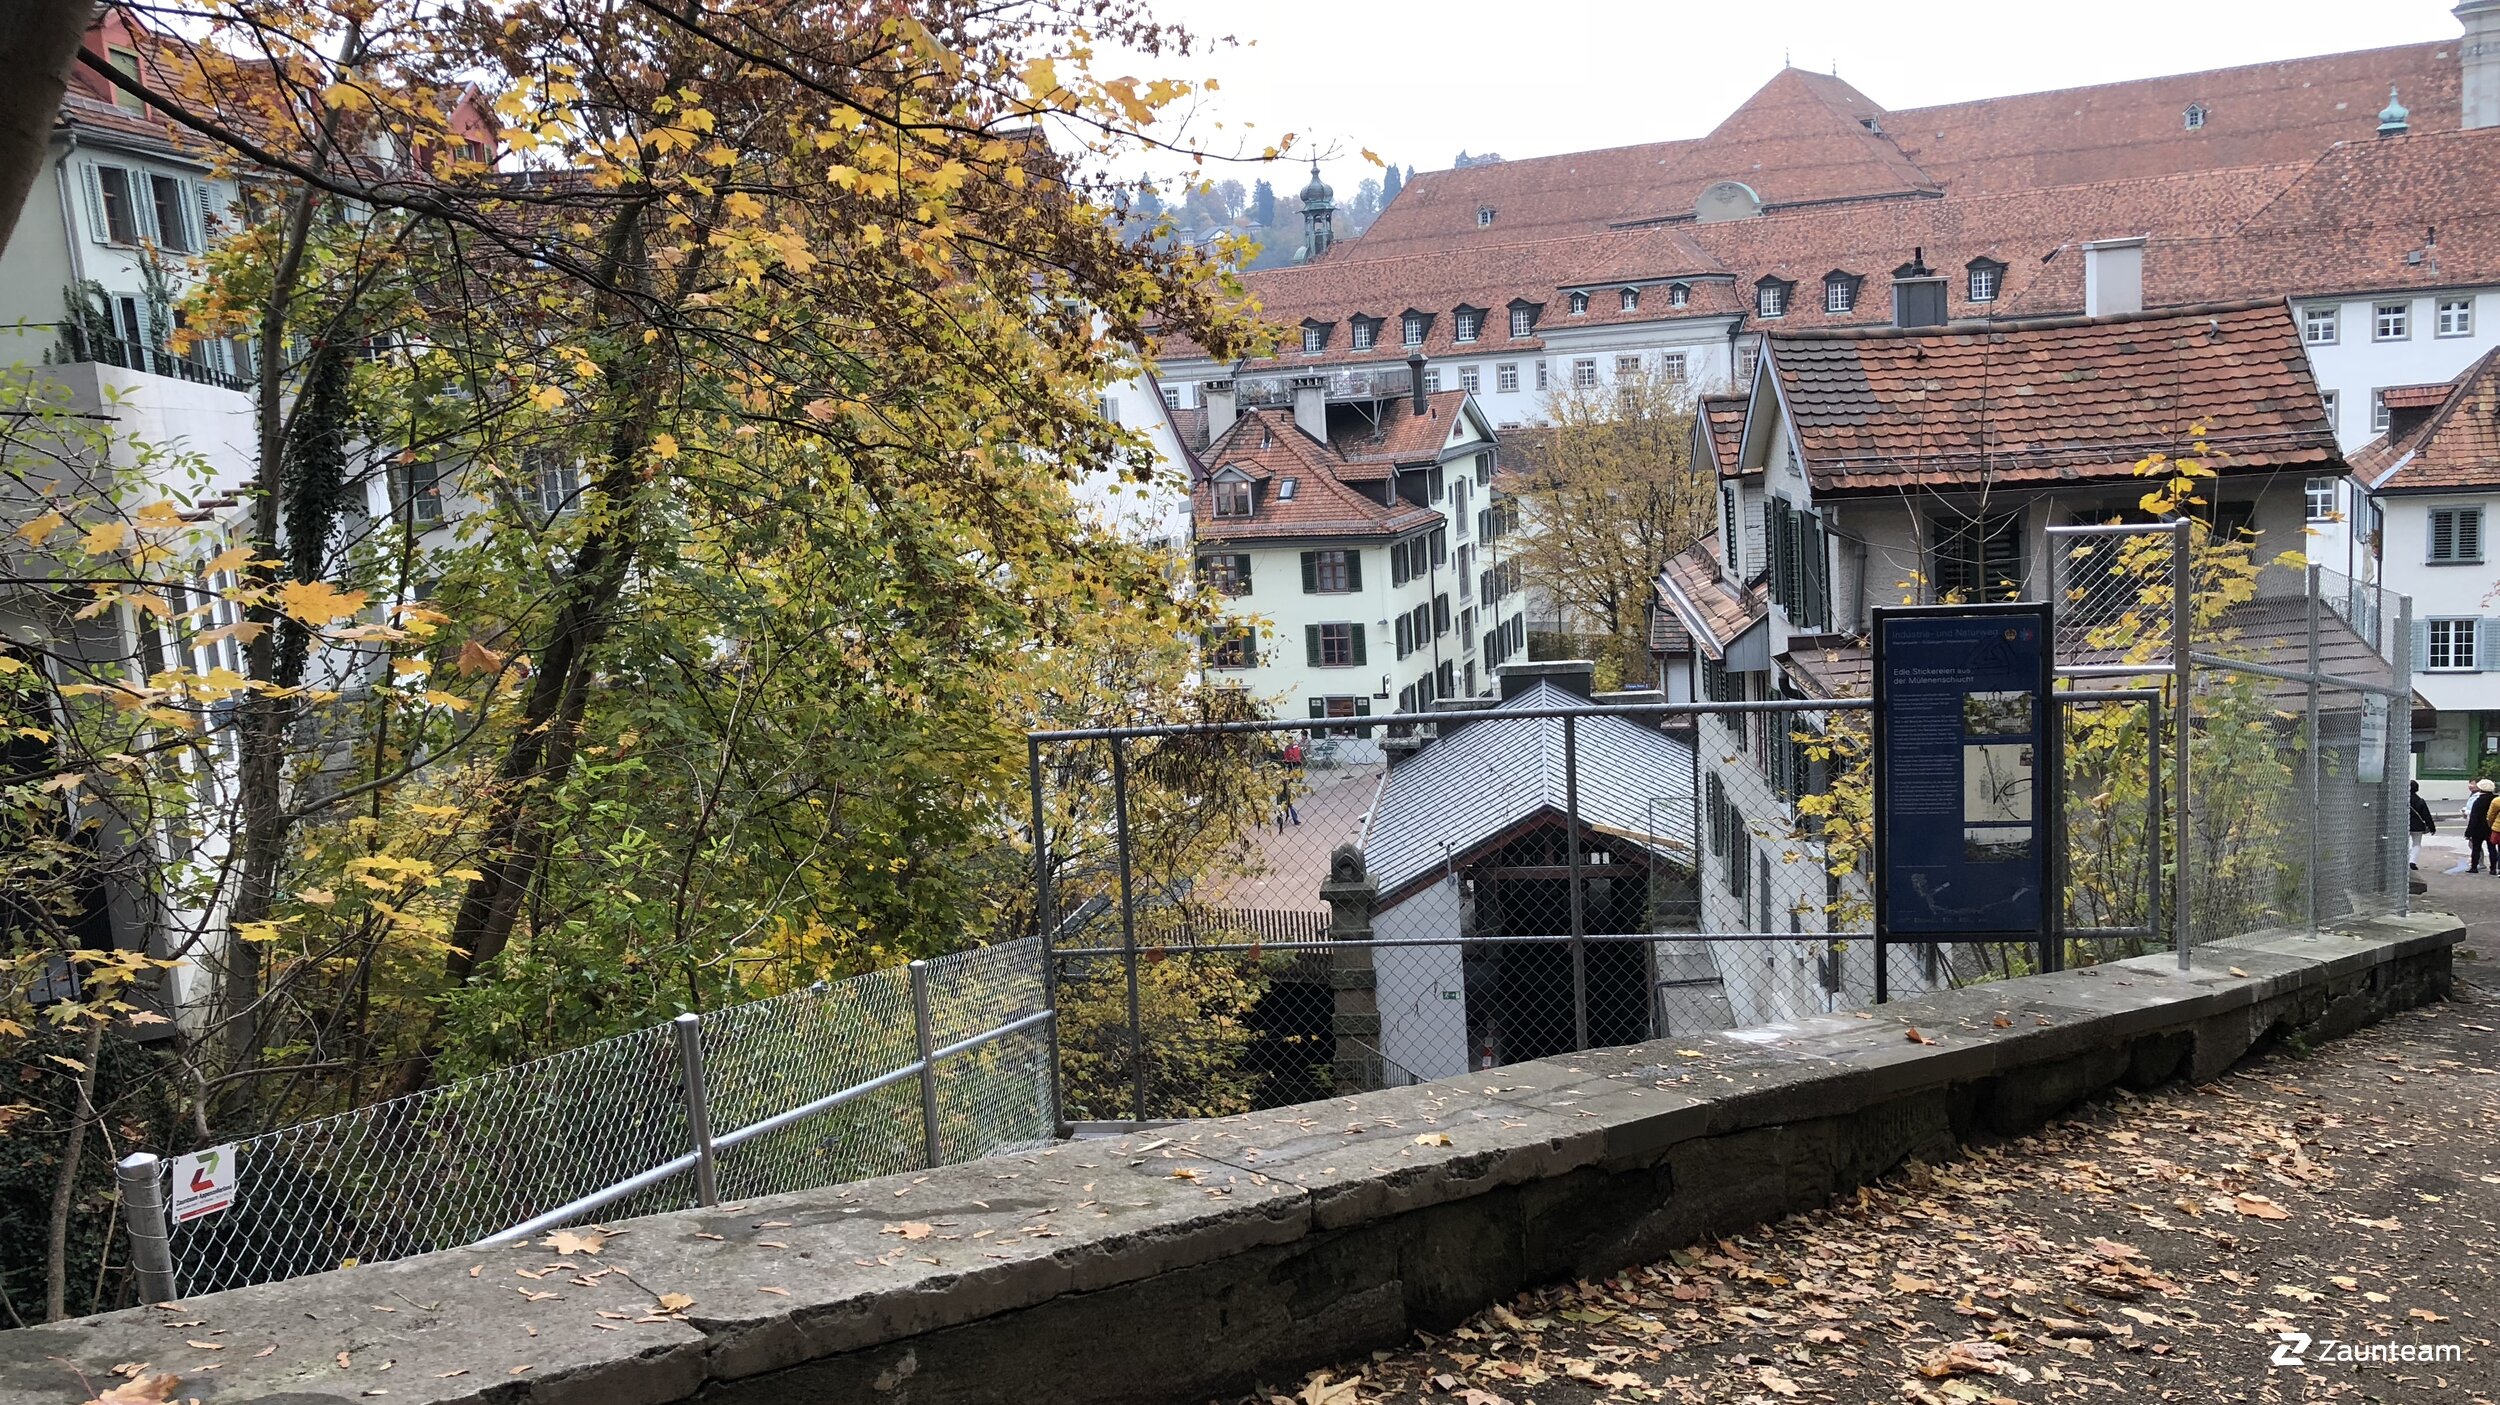 Grillage diagonal de 2018 à 9011 St. Gallen Suisse de Zaunteam Appenzellerland.